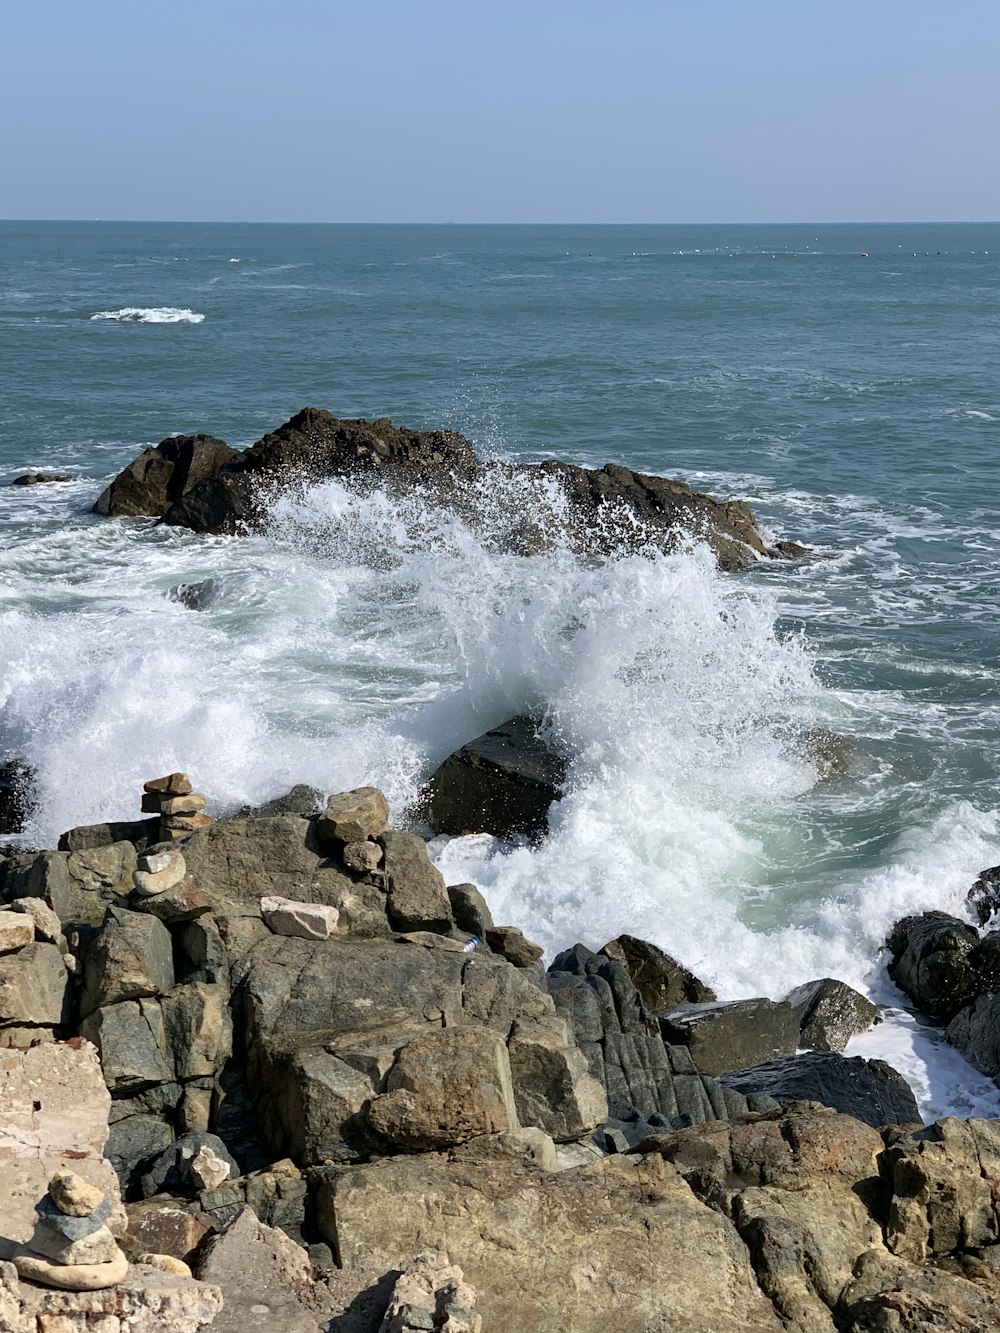 Costa rocosa marrón con olas del mar durante el día